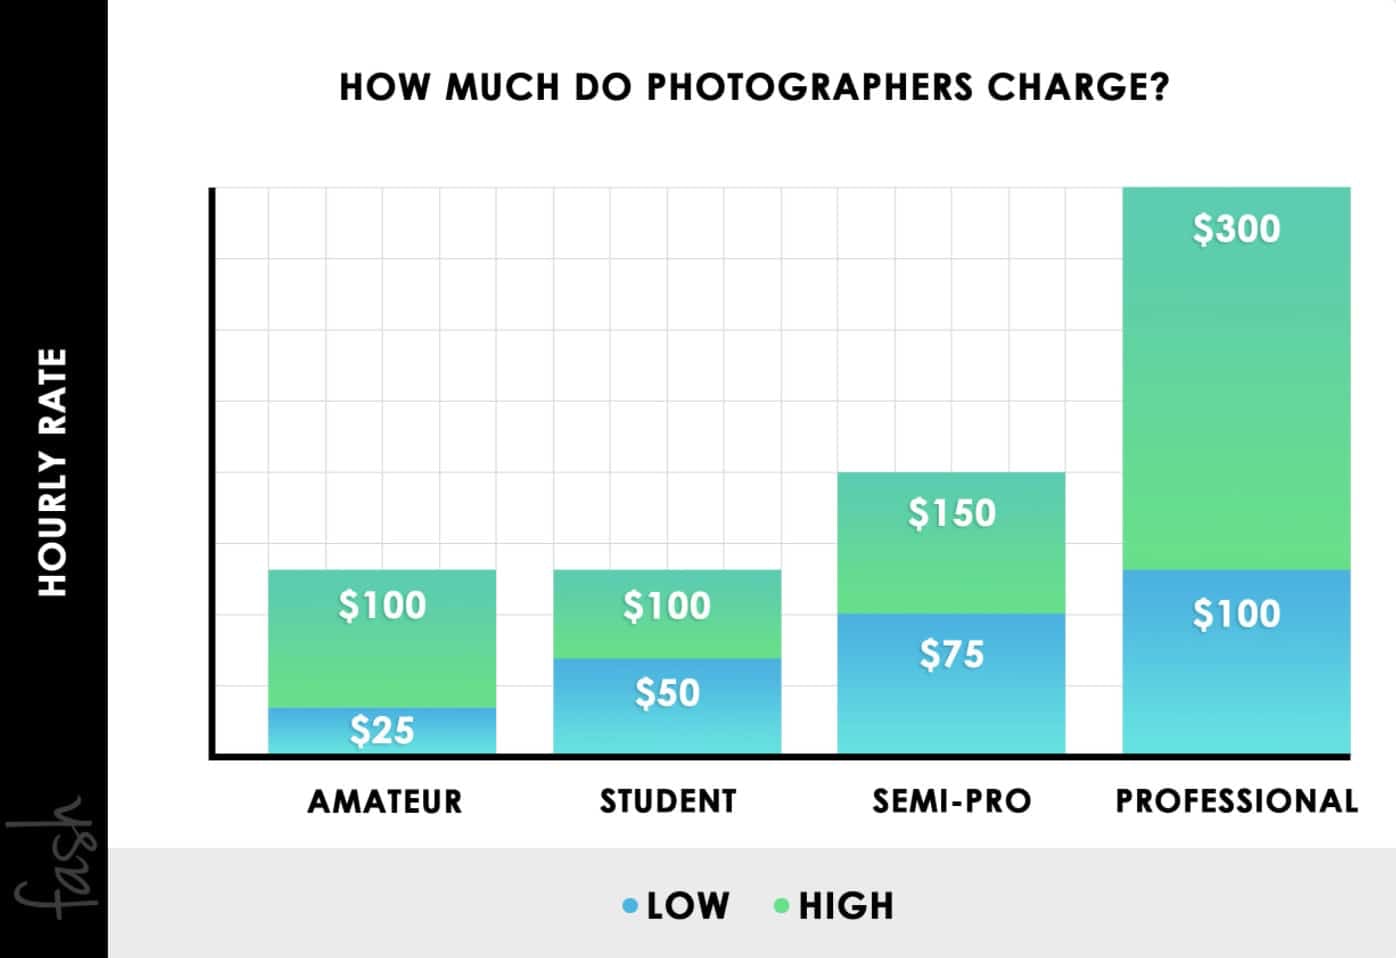 Fash ¿Cuánto cobran los fotógrafos por hora en USD?